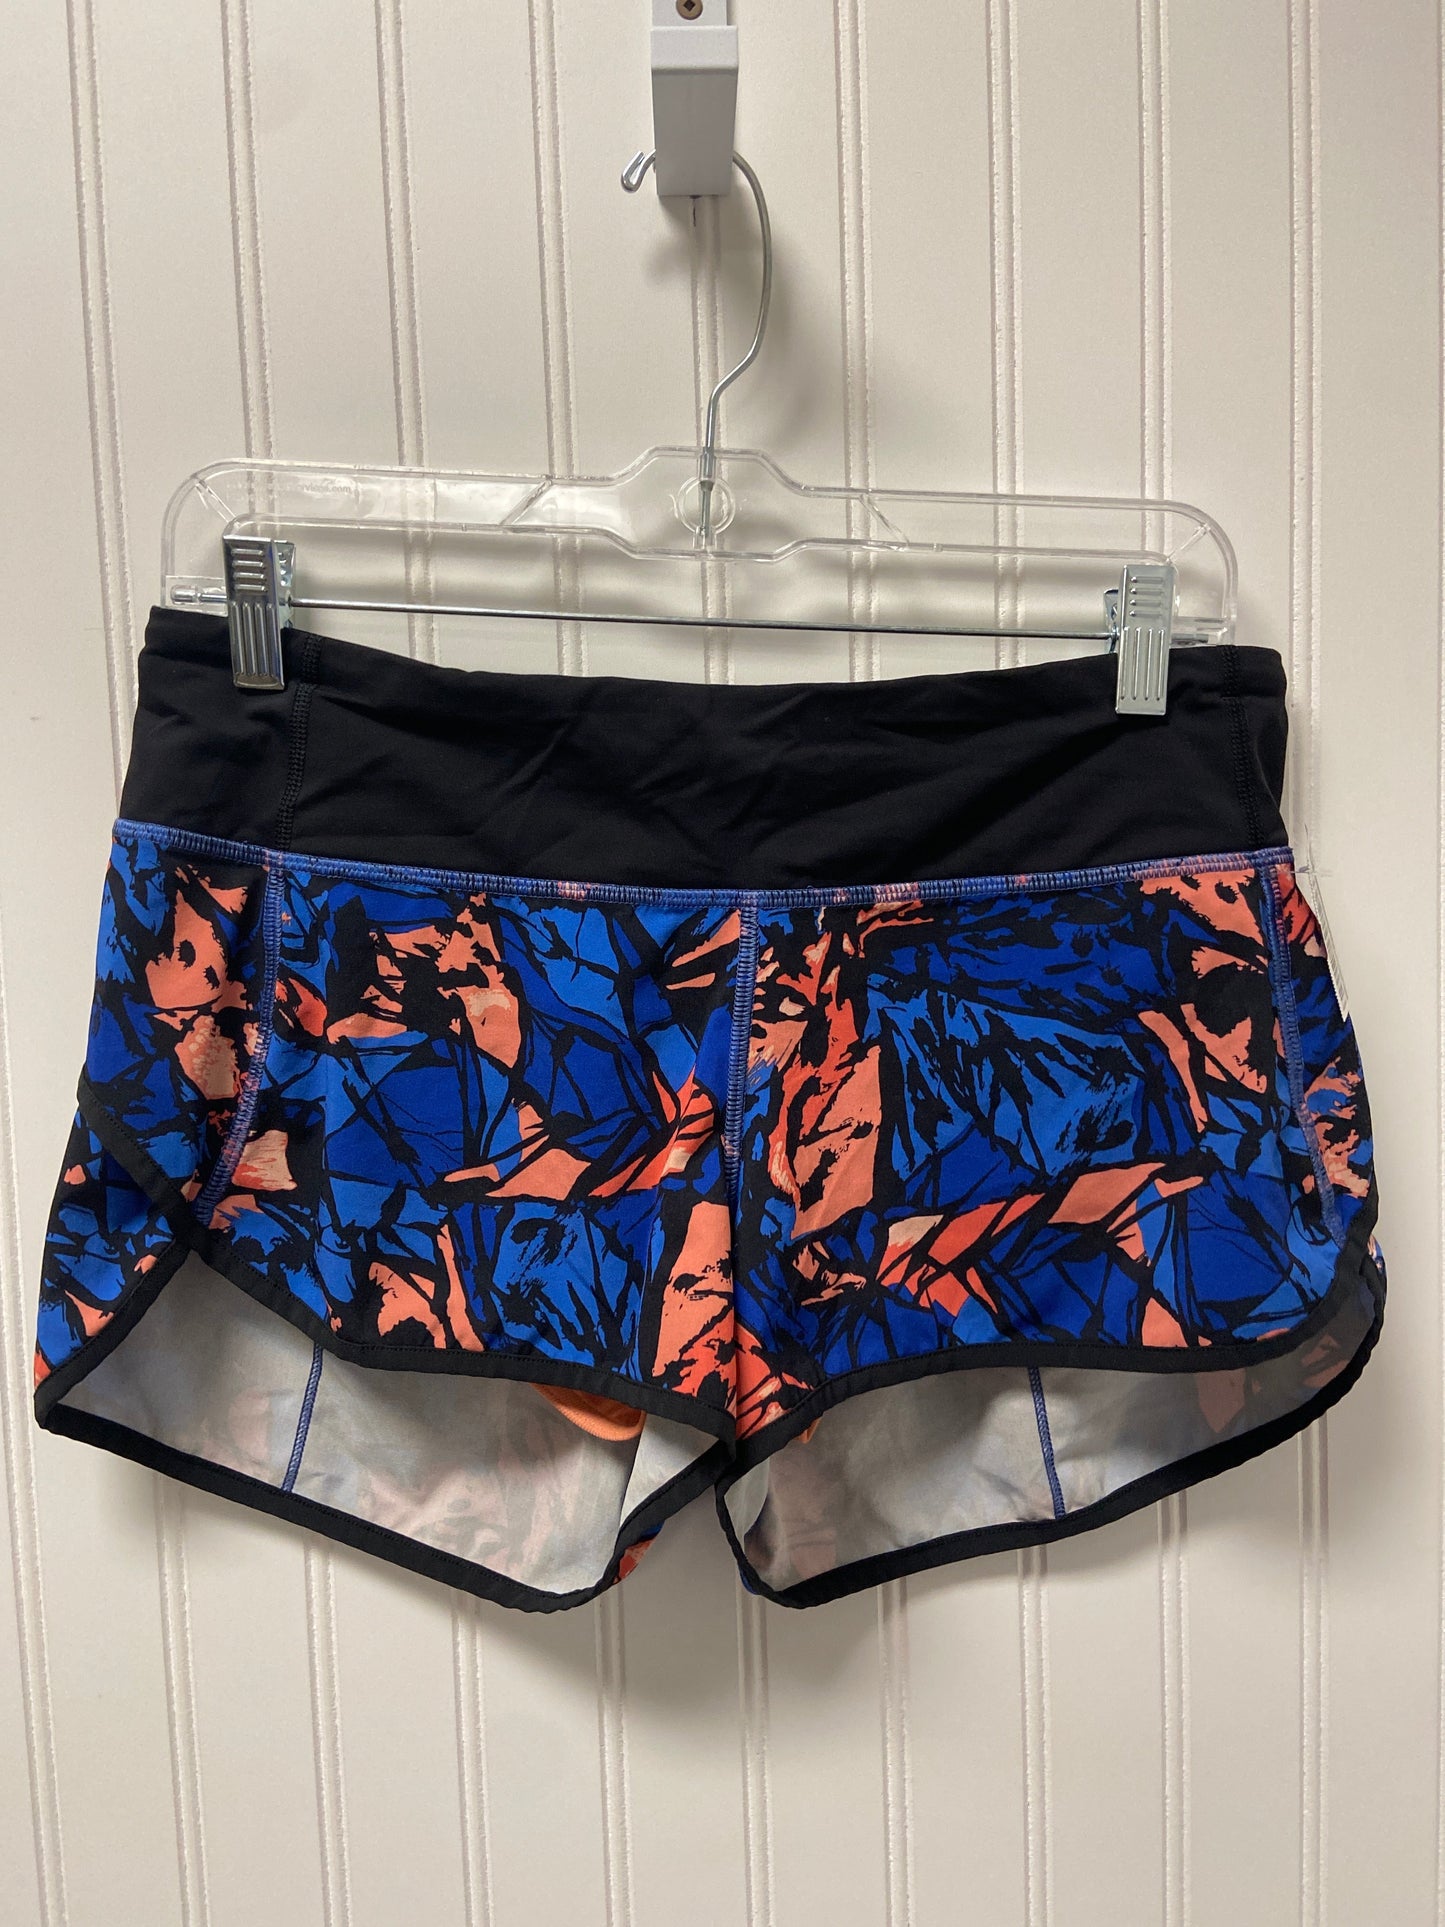 Blue & Orange Athletic Shorts Lululemon, Size S